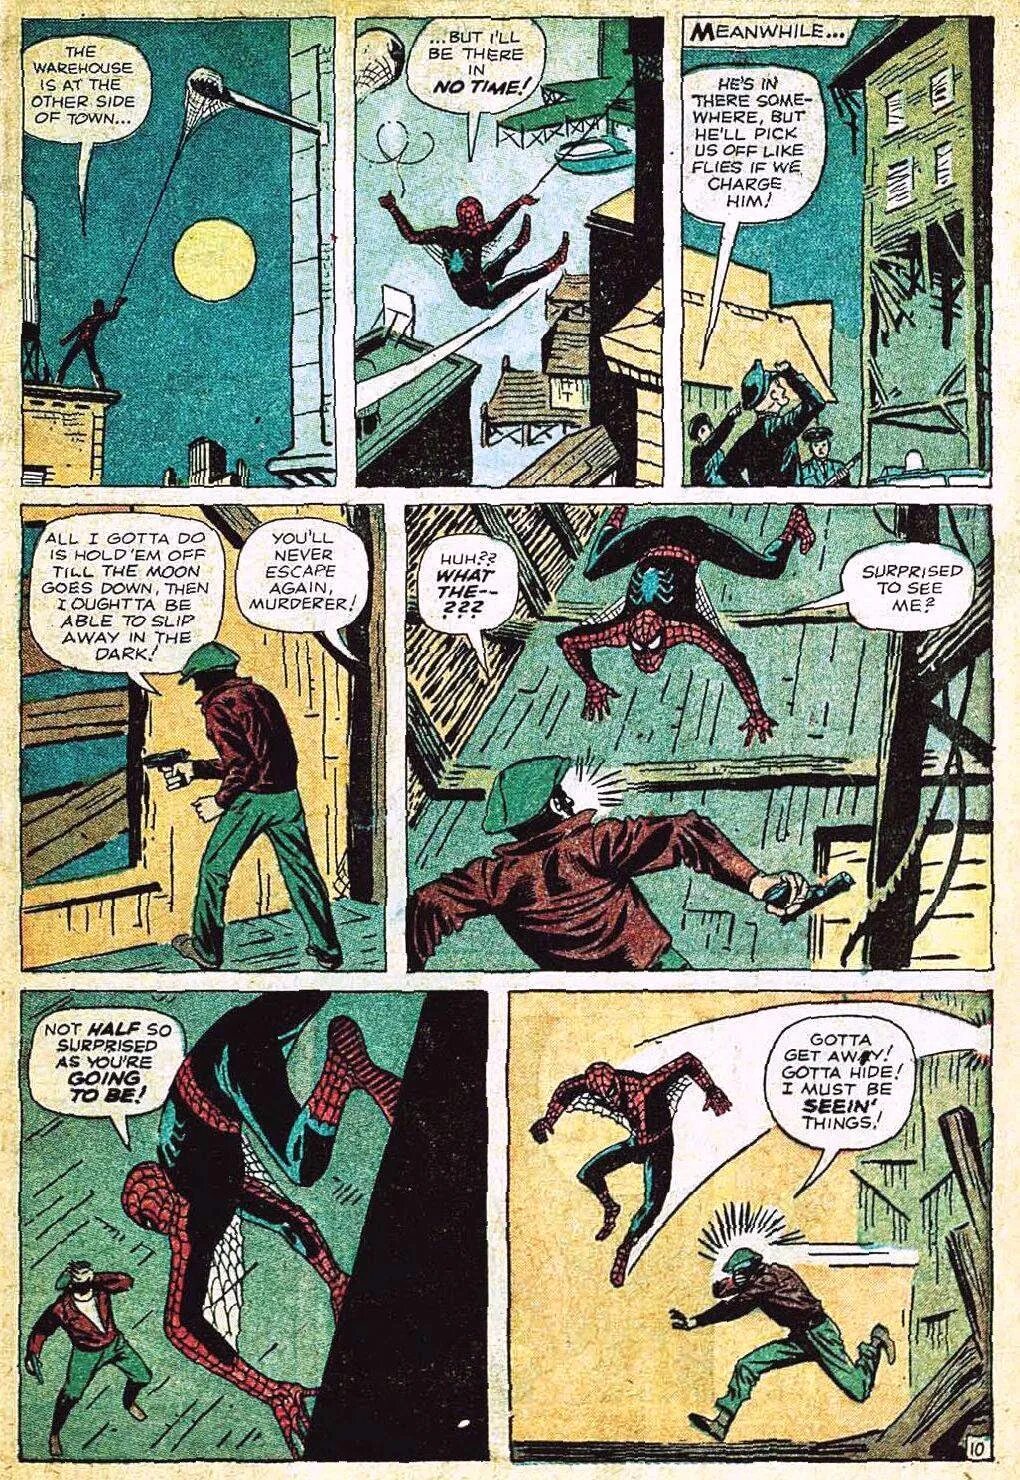 Комиксы про первый. Человек паук первый комикс 1962. Человек паук 1 комикс. Spider man первый комикс. Amazing Fantasy Стив Дитко.